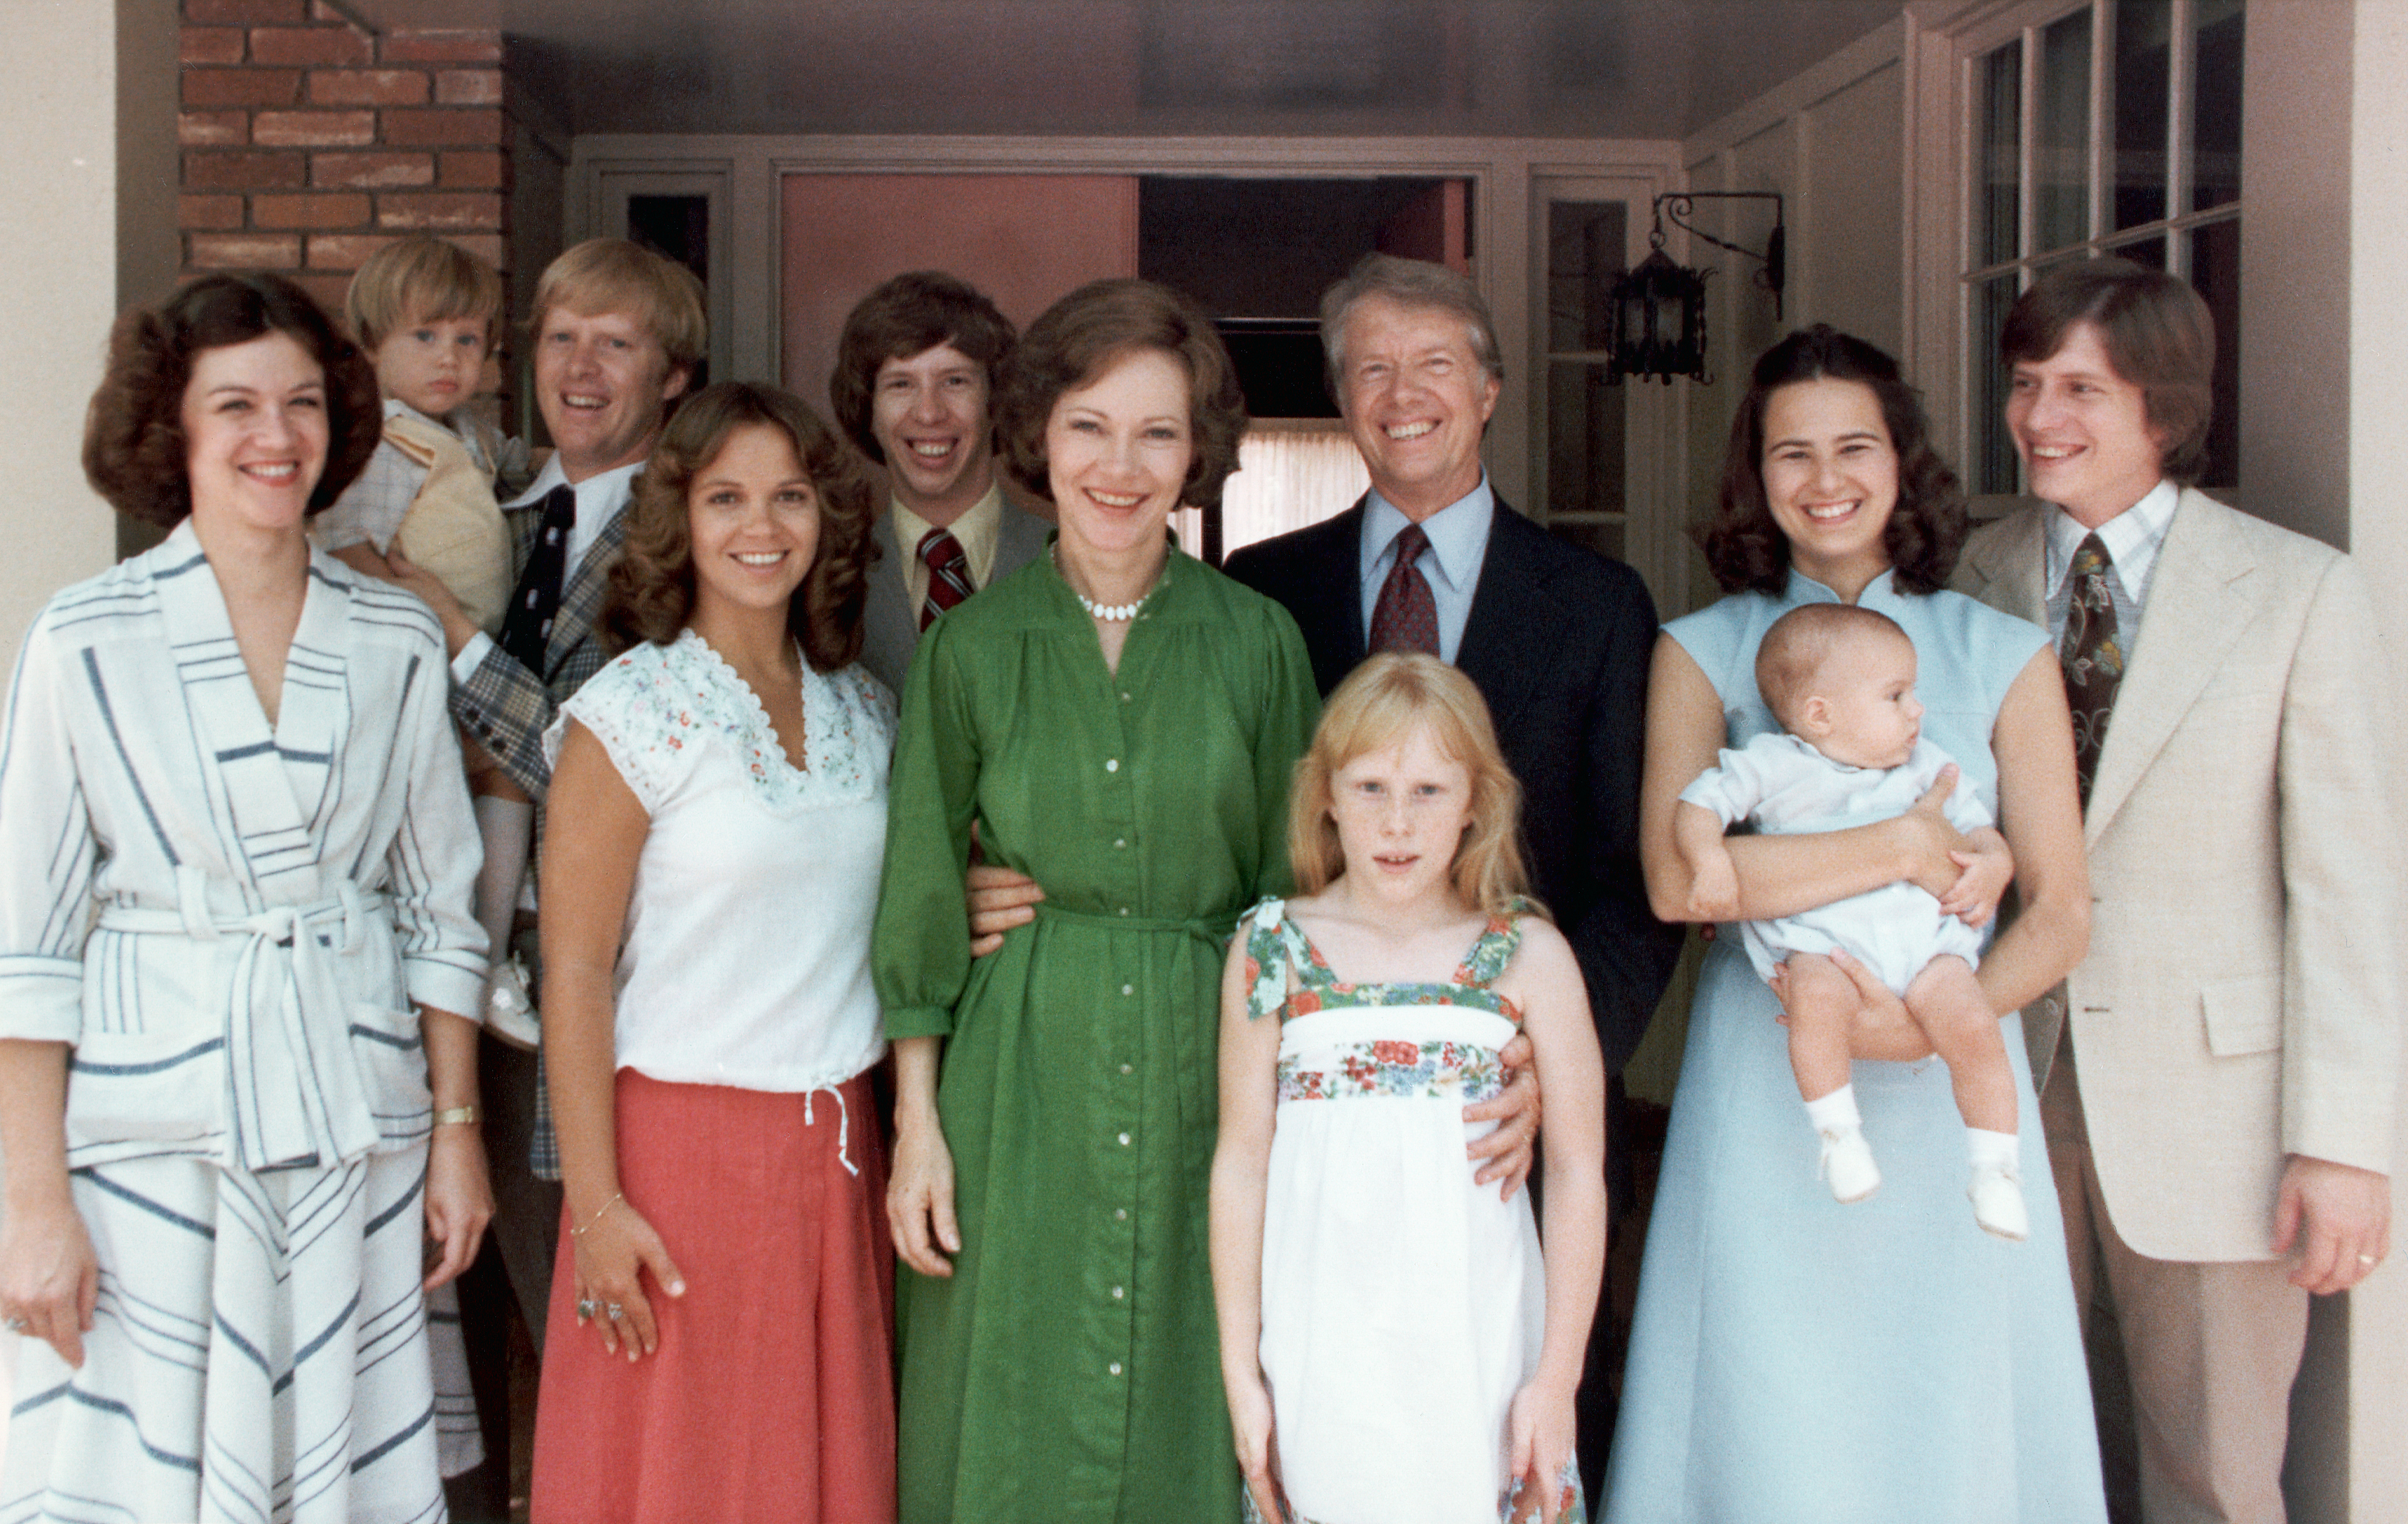 L'ancienne première dame des États-Unis, Rosalynn Carter, et l'ancien président des États-Unis, Jimmy Carter, avec leur famille, photographiés dans un portrait de famille vers 1977-1980 | Source : Getty Images